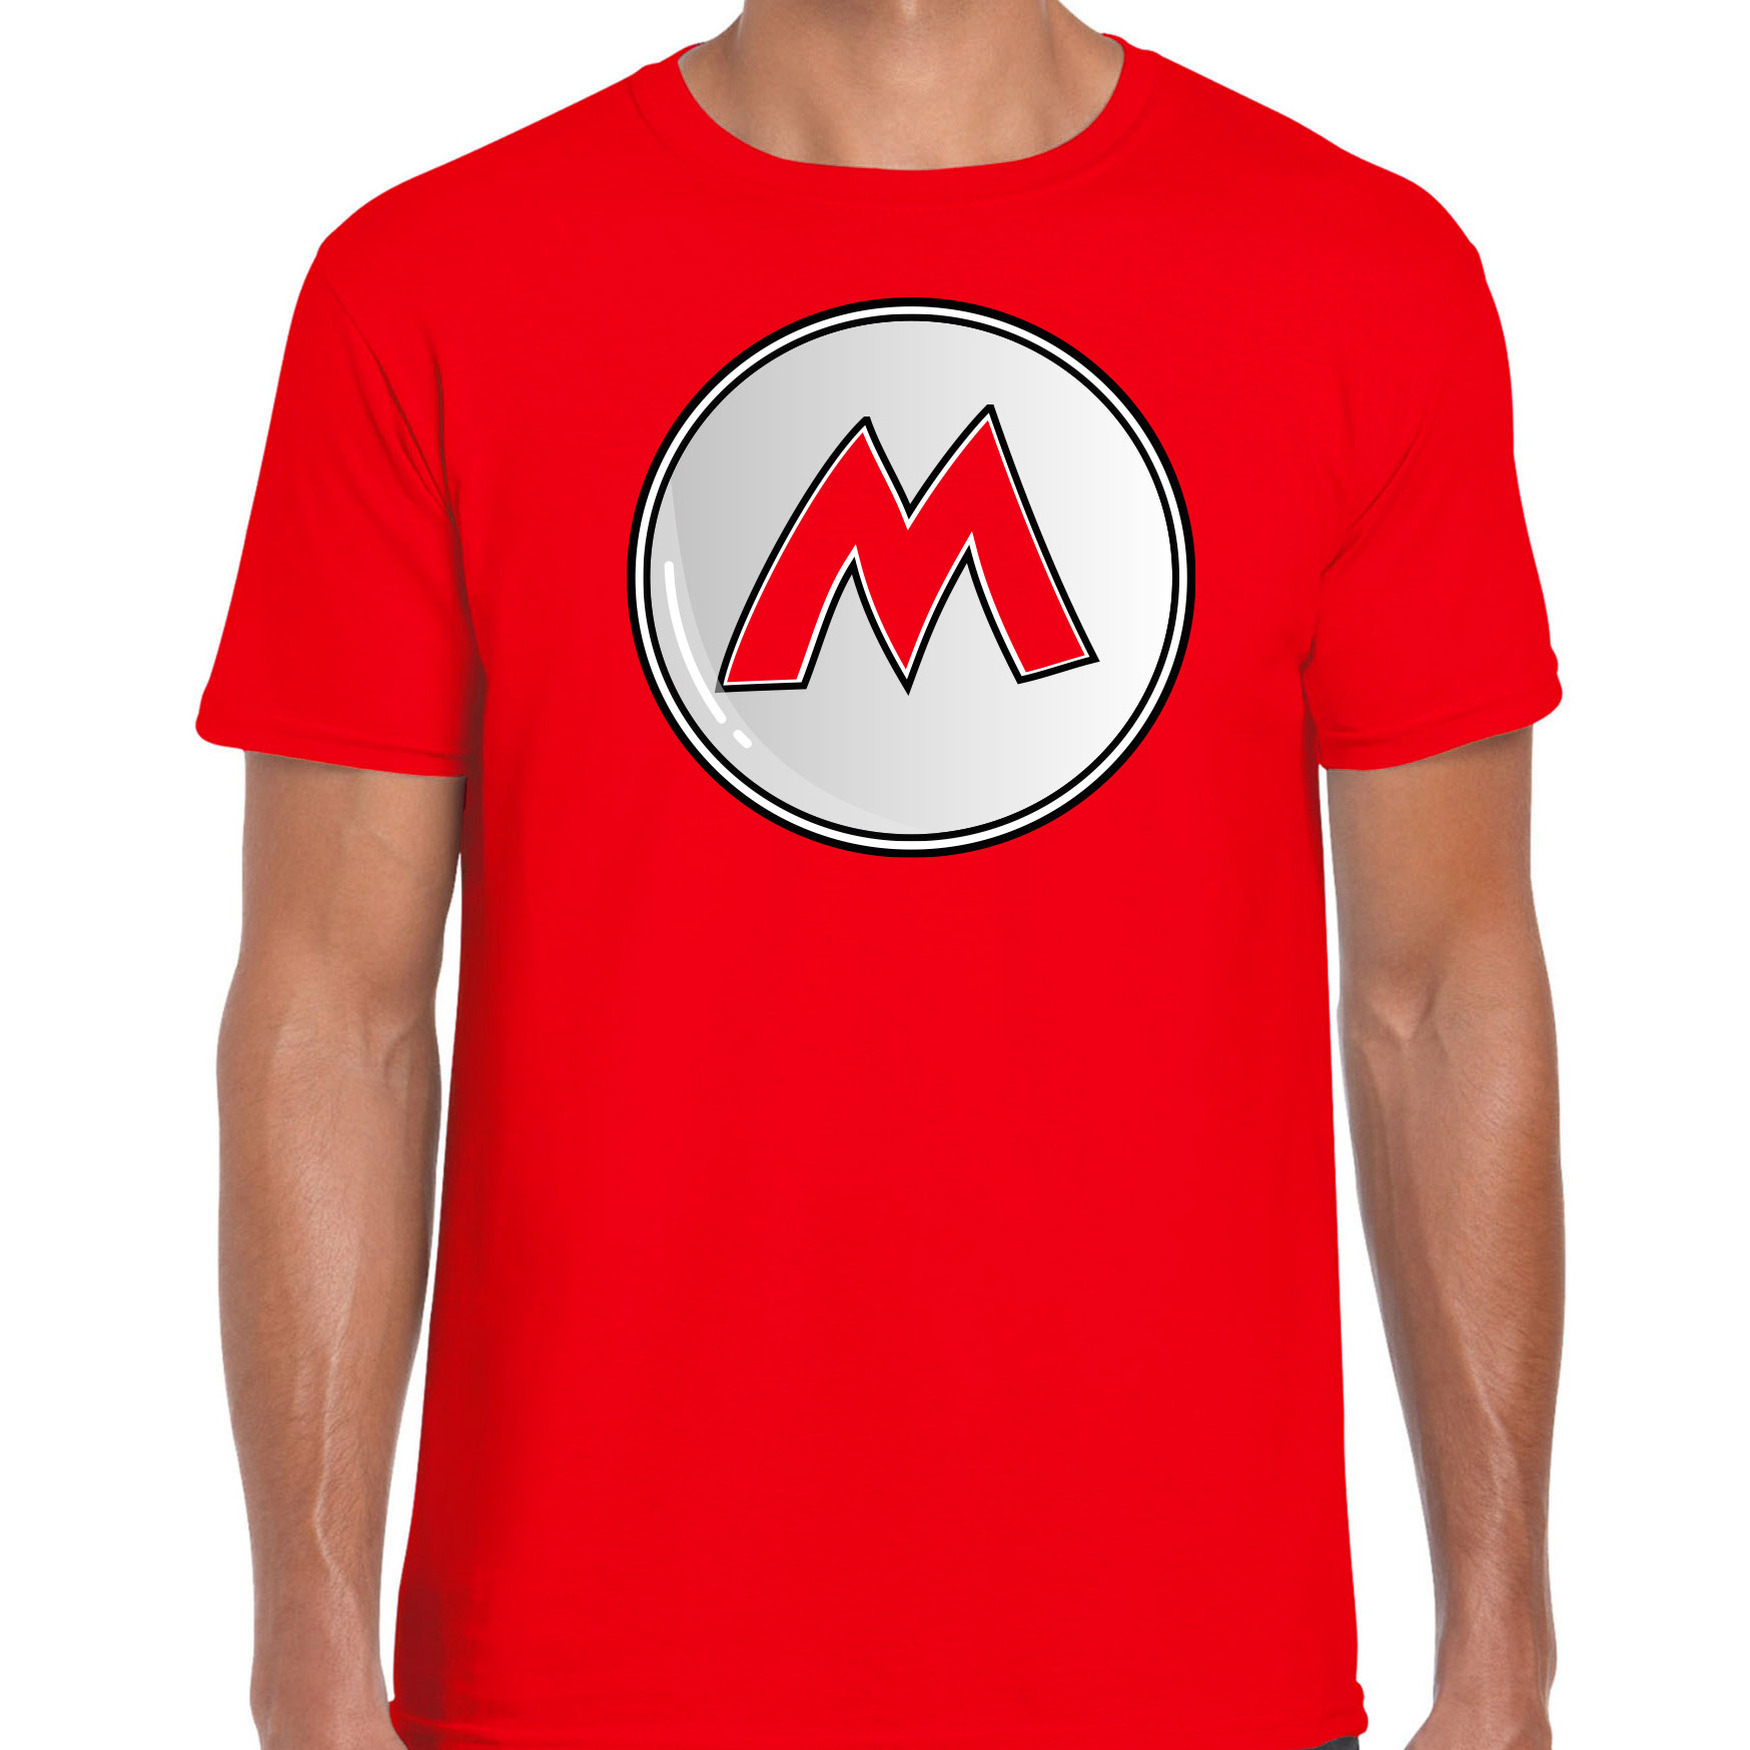 Afbeelding van Game verkleed t-shirt voor heren - loodgieter Mario - rood - carnaval/themafeest kostuum